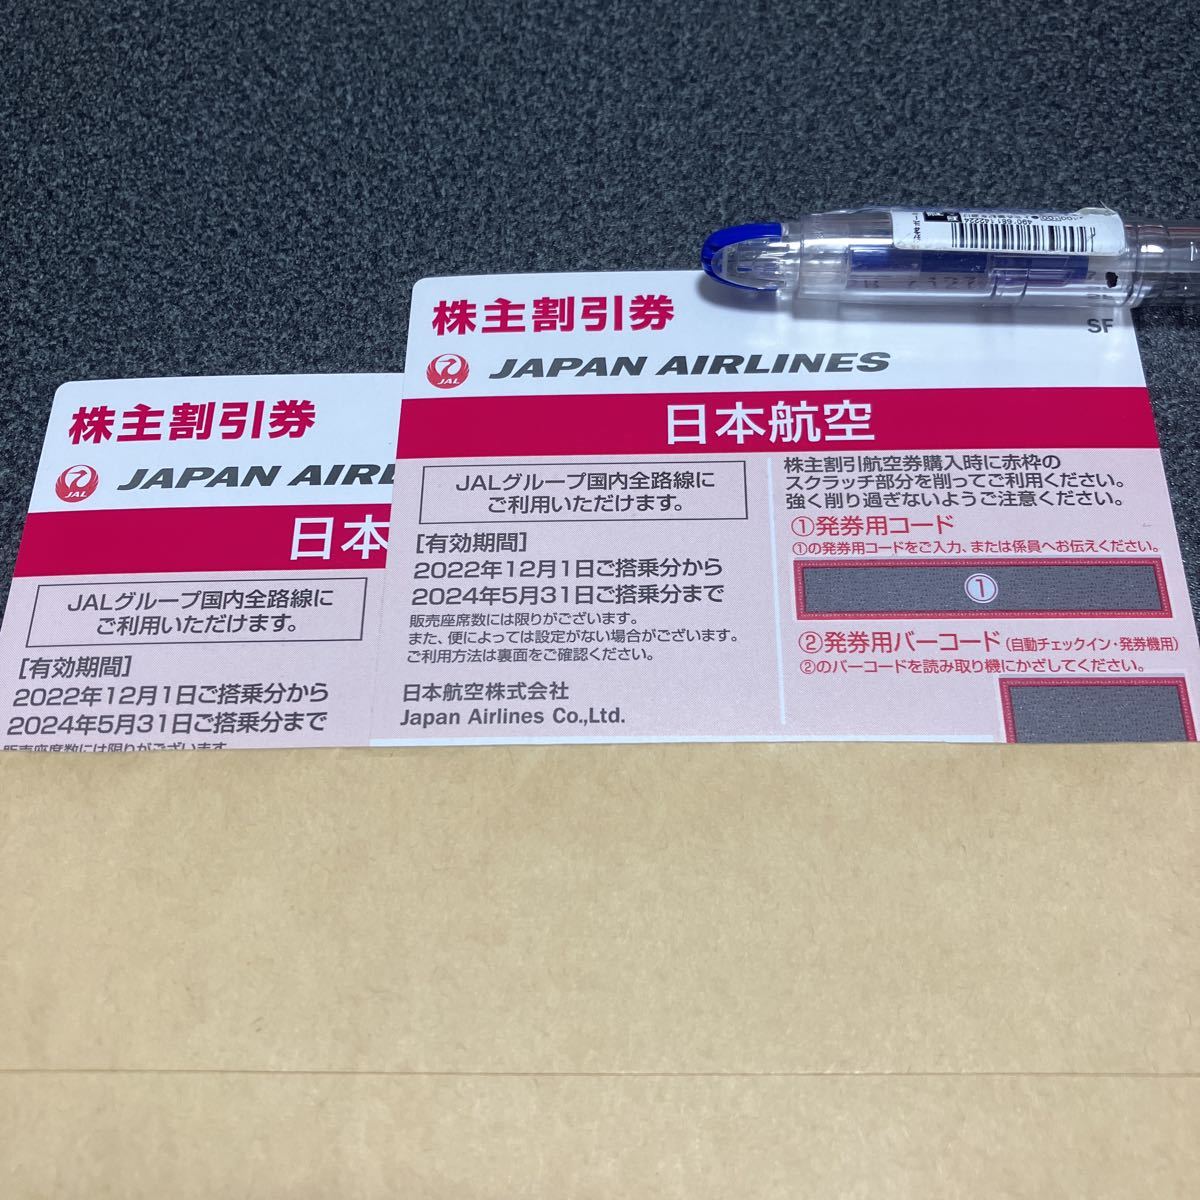 24/5/31(金)まで】日本 航空 JAL 株主 優待 券 2 枚 セット 国内線 50